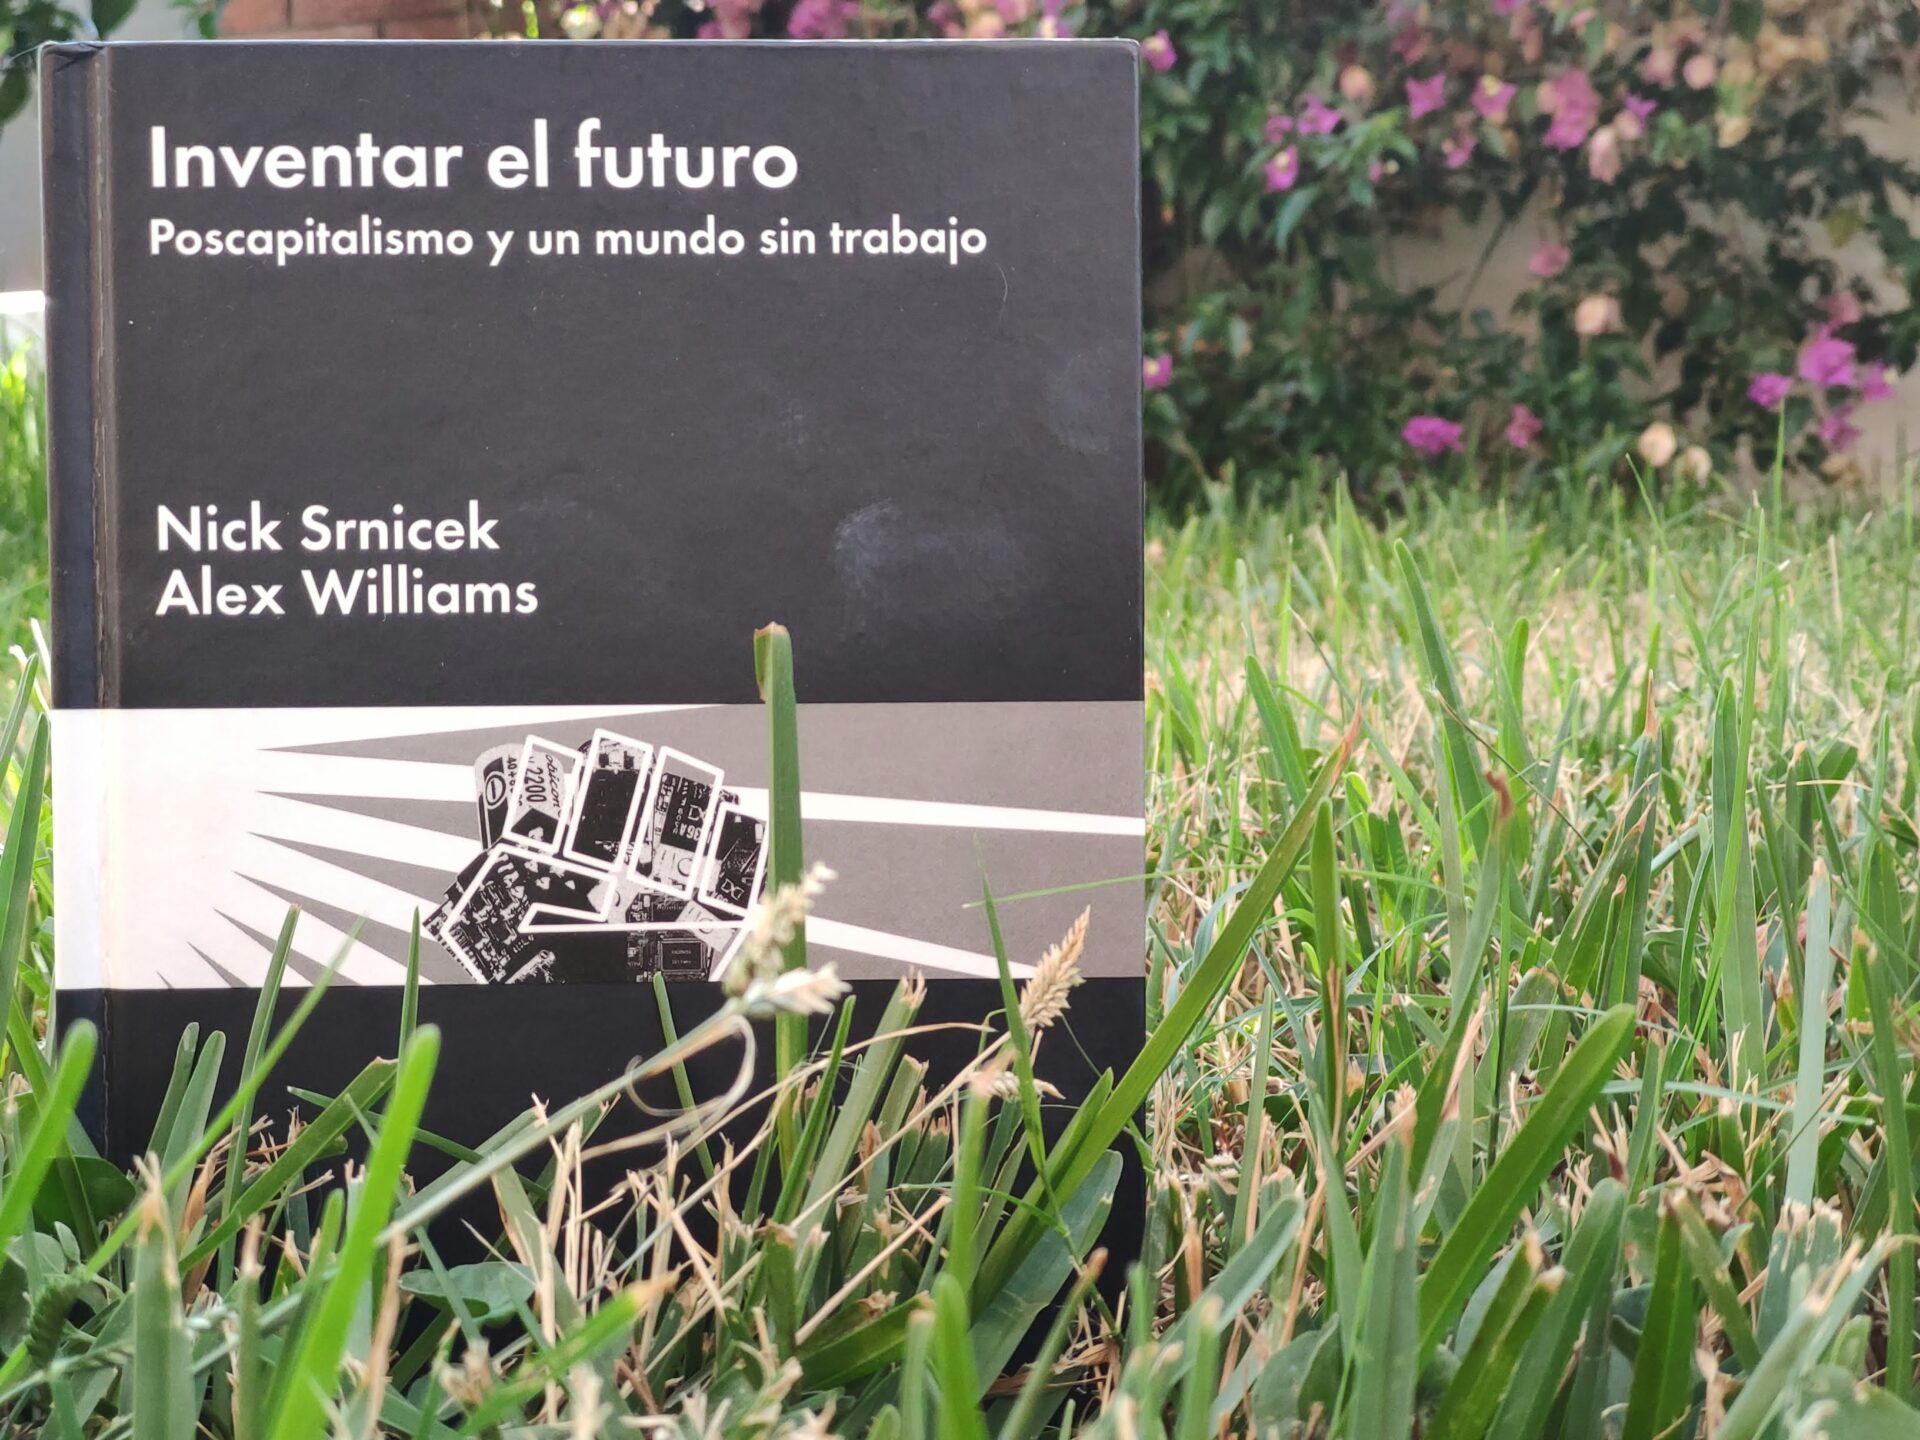 Libro "Inventar el futuro" de Srnicek y Williams